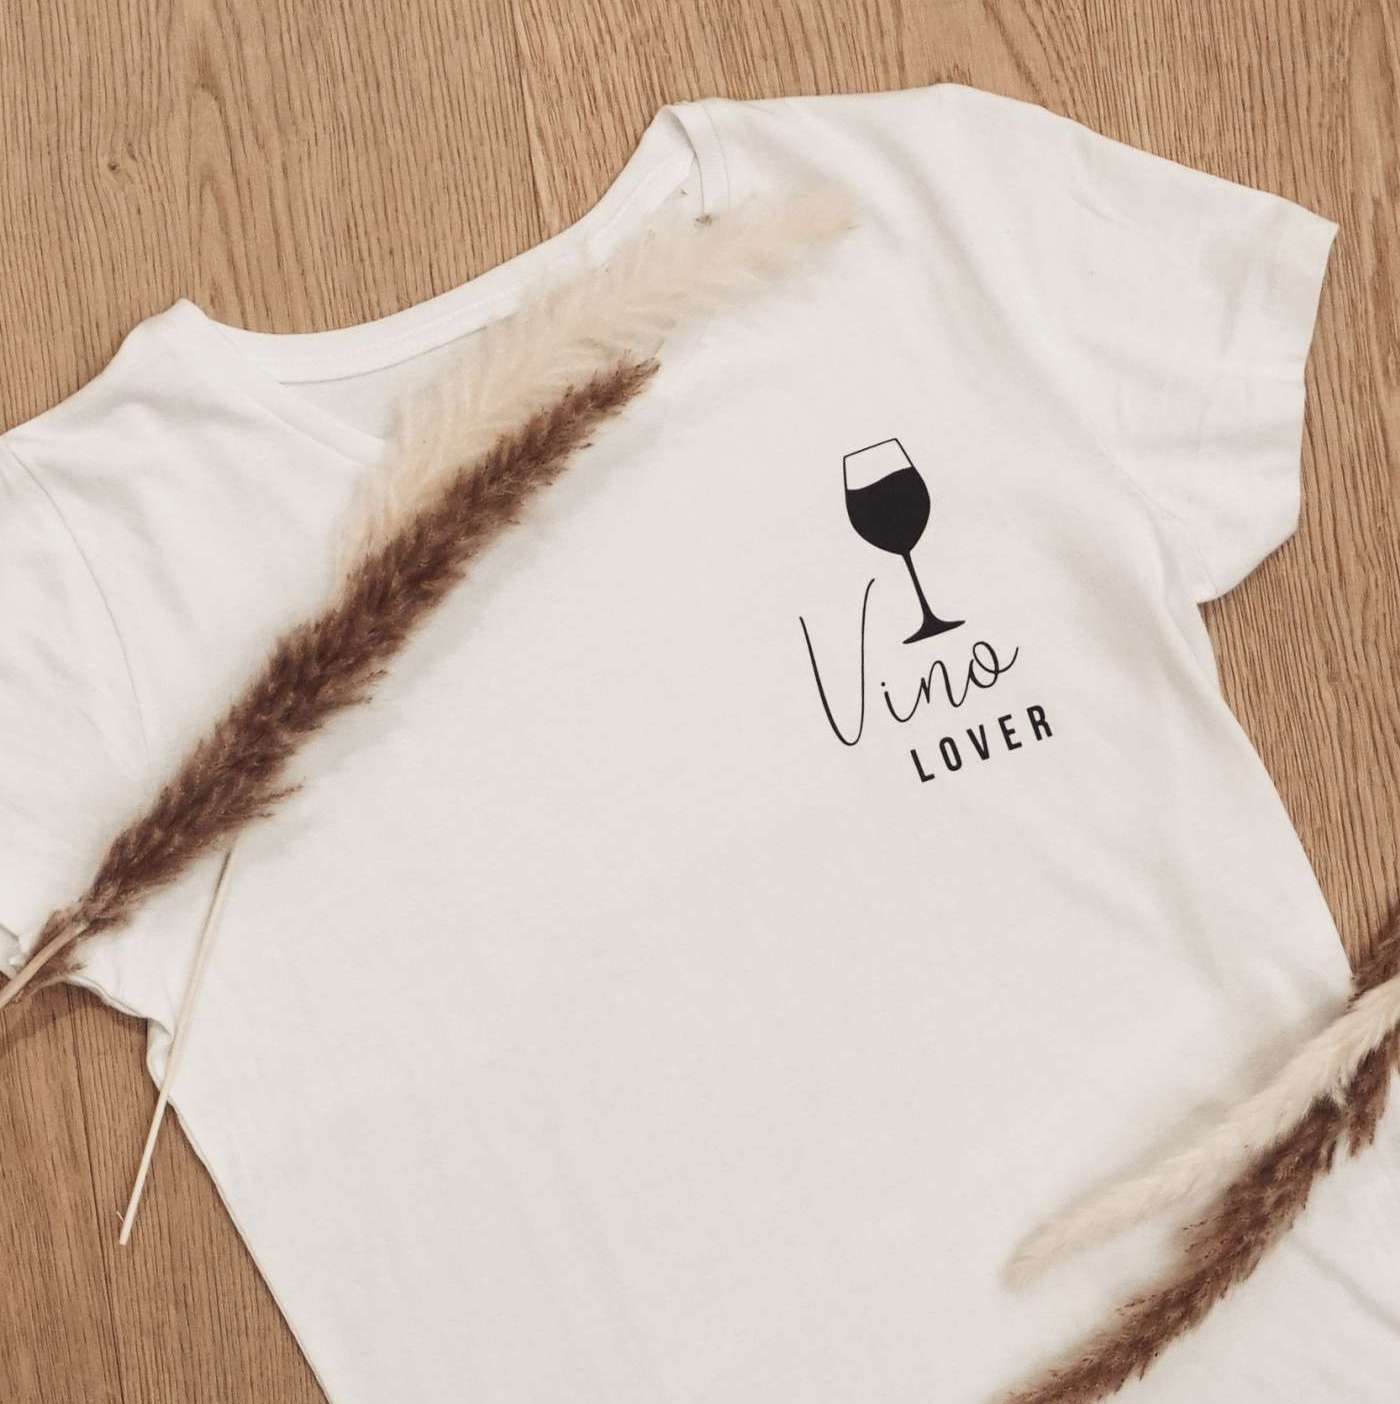 Vino Lover! Dieses T-Shirt ist ein absolutes Must-Have für alle Weinliebhaber!